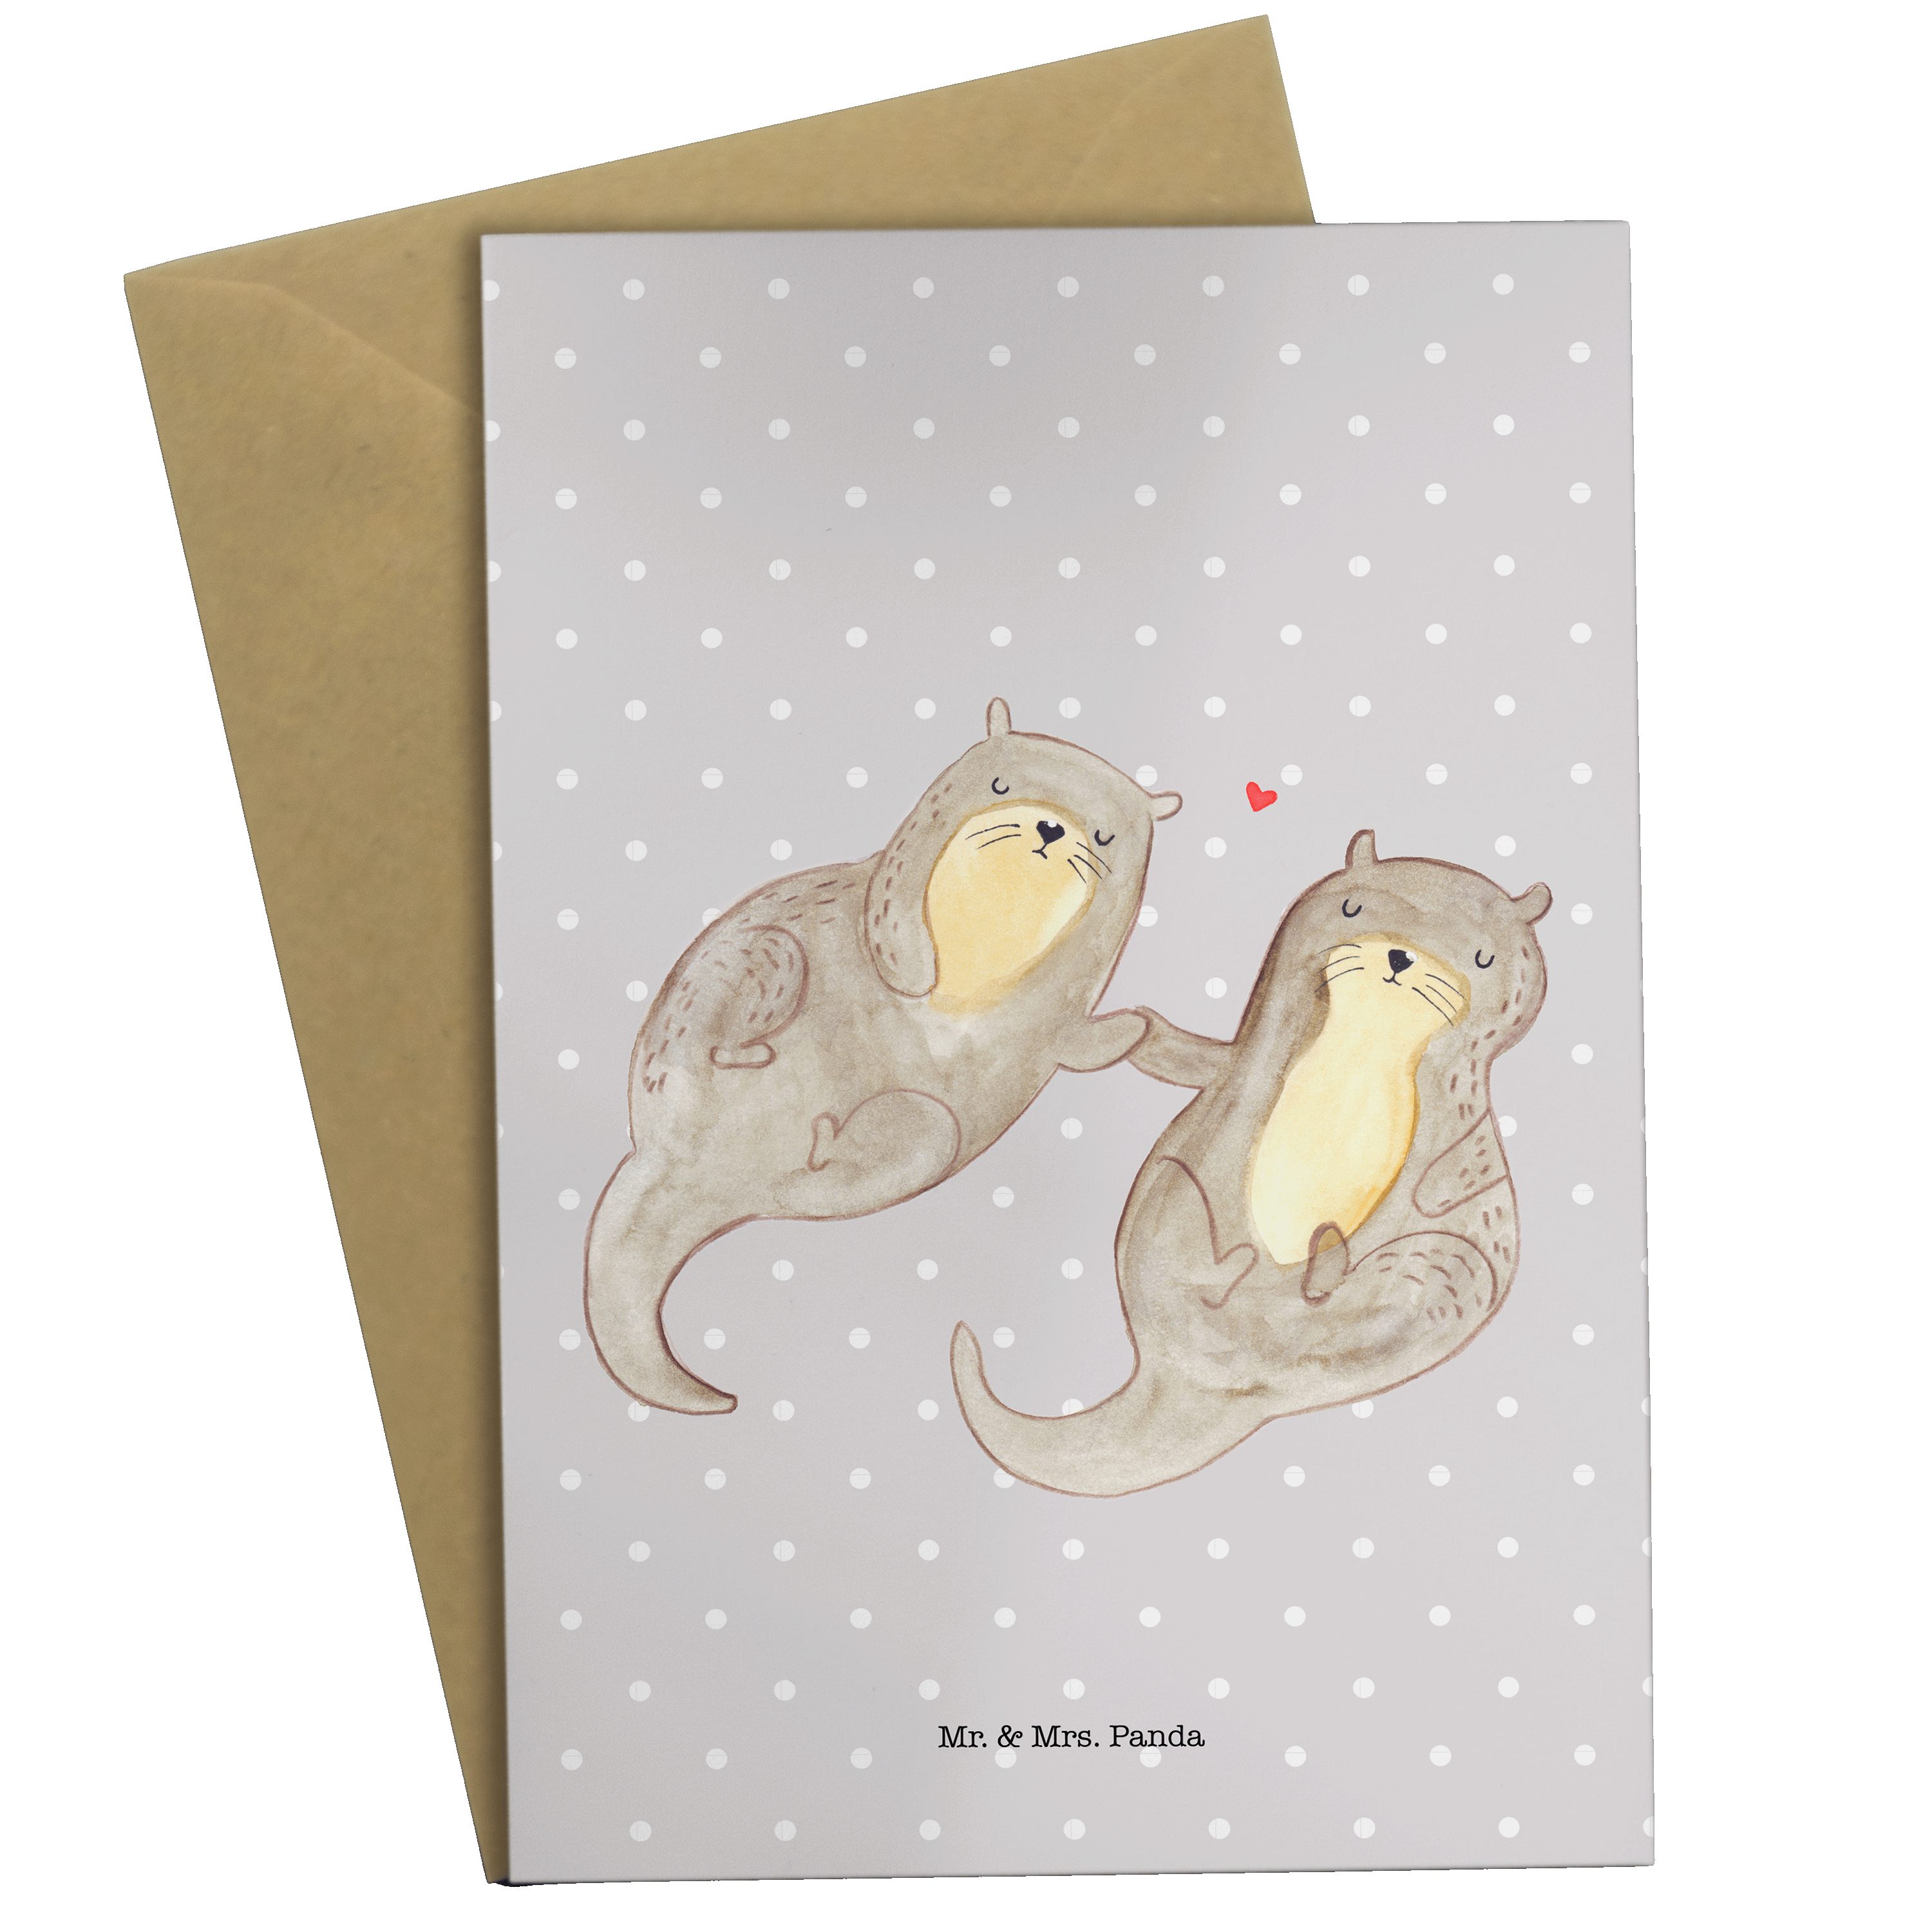 Mr. & Mrs. Panda Grußkarte Otter händchenhaltend - Grau Pastell - Geschenk, Seeotter, Einladungs